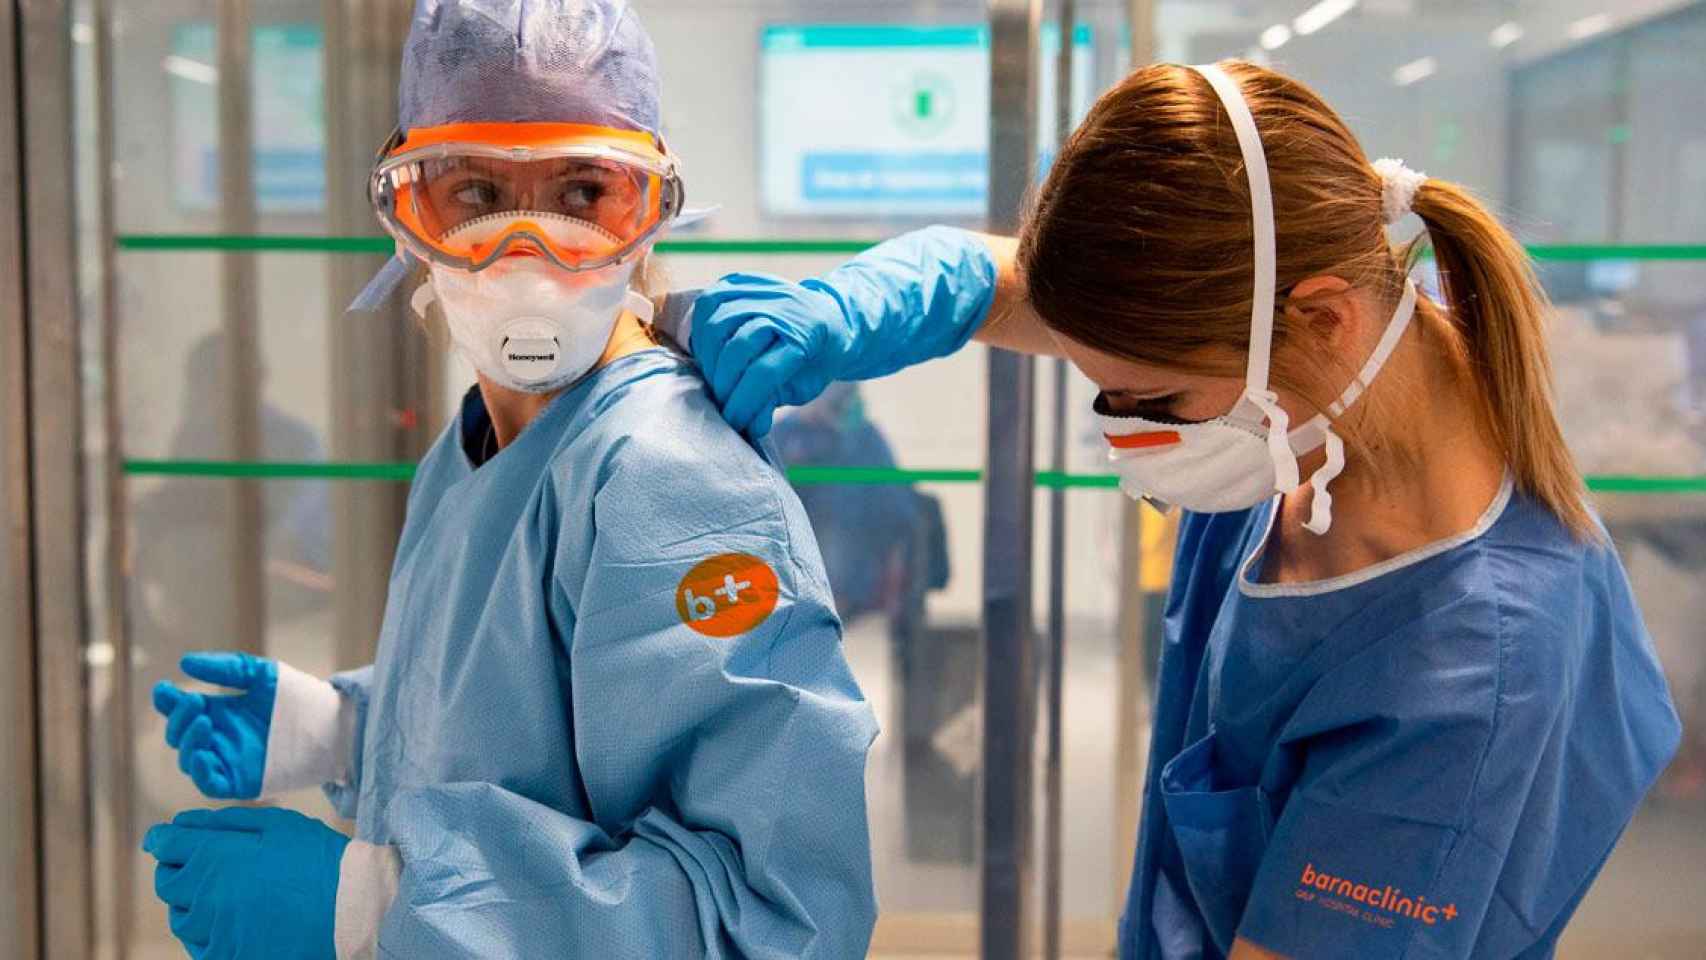 Una doctora y enfermera de Barnaclínic tomando medidas de seguridad contra el Covid-19 / CG